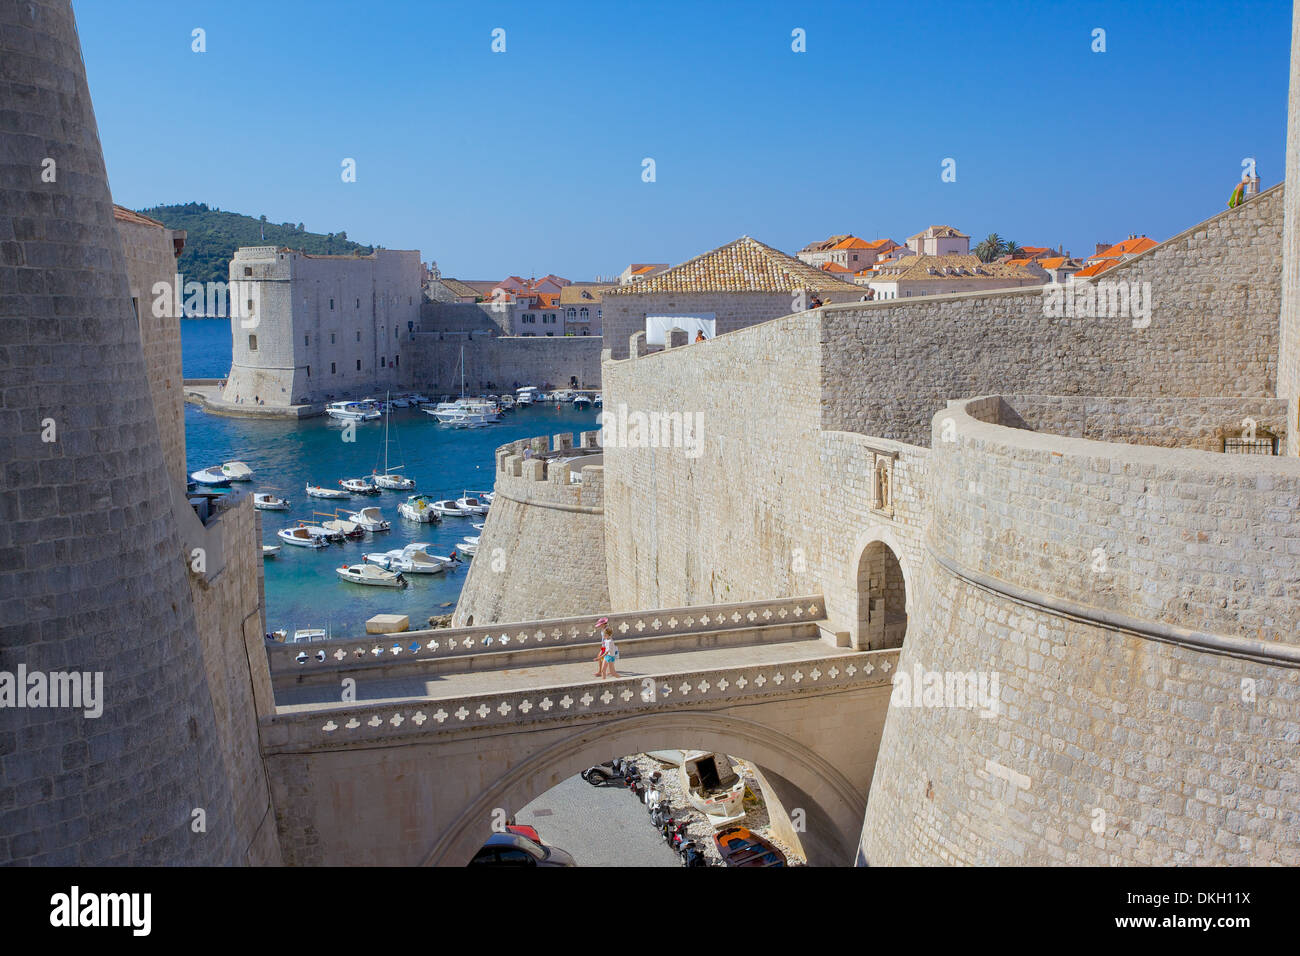 Porto e alle mura della vecchia città, patrimonio mondiale dell UNESCO, Dubrovnik, Dalmazia, Croazia, Europa Foto Stock